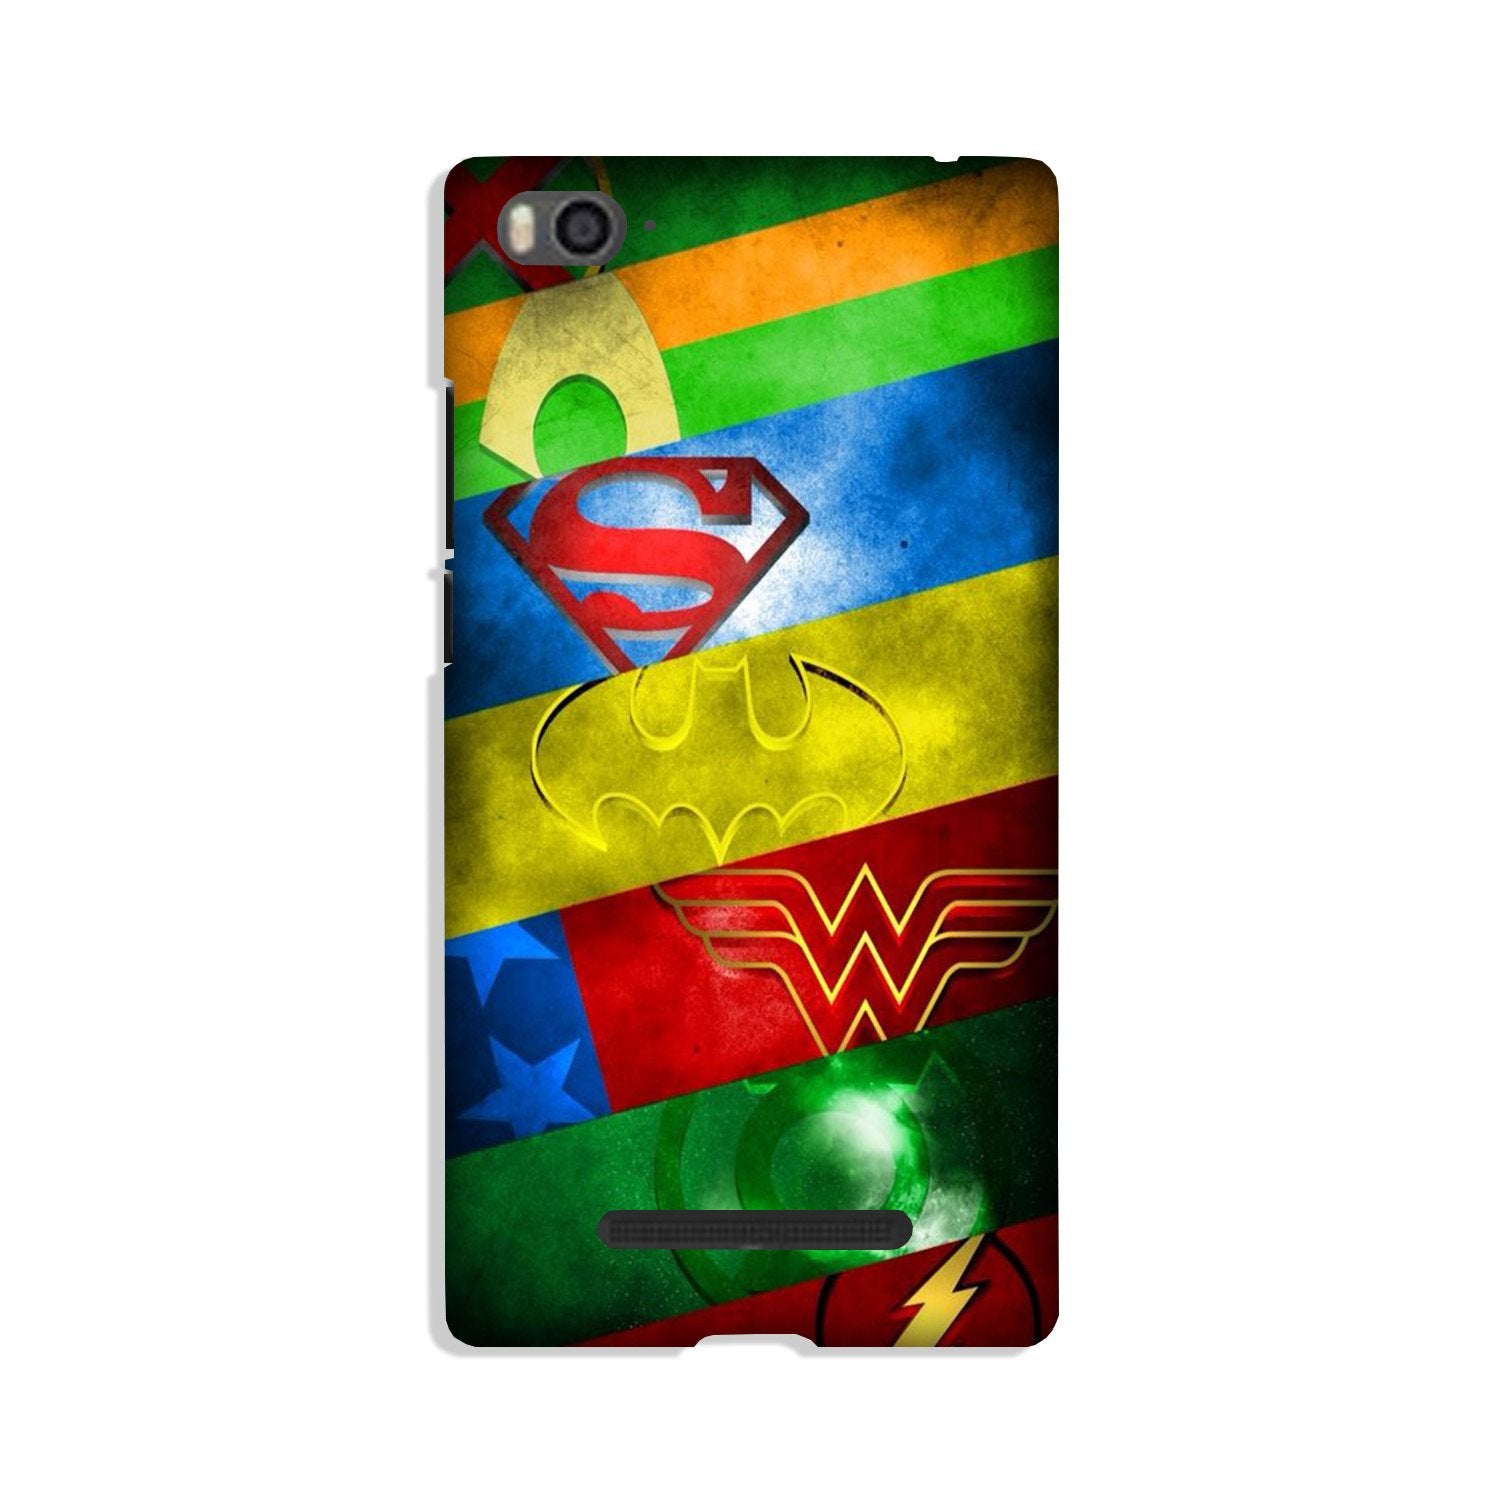 Superheros Logo Case for Xiaomi Mi 4i (Design No. 251)